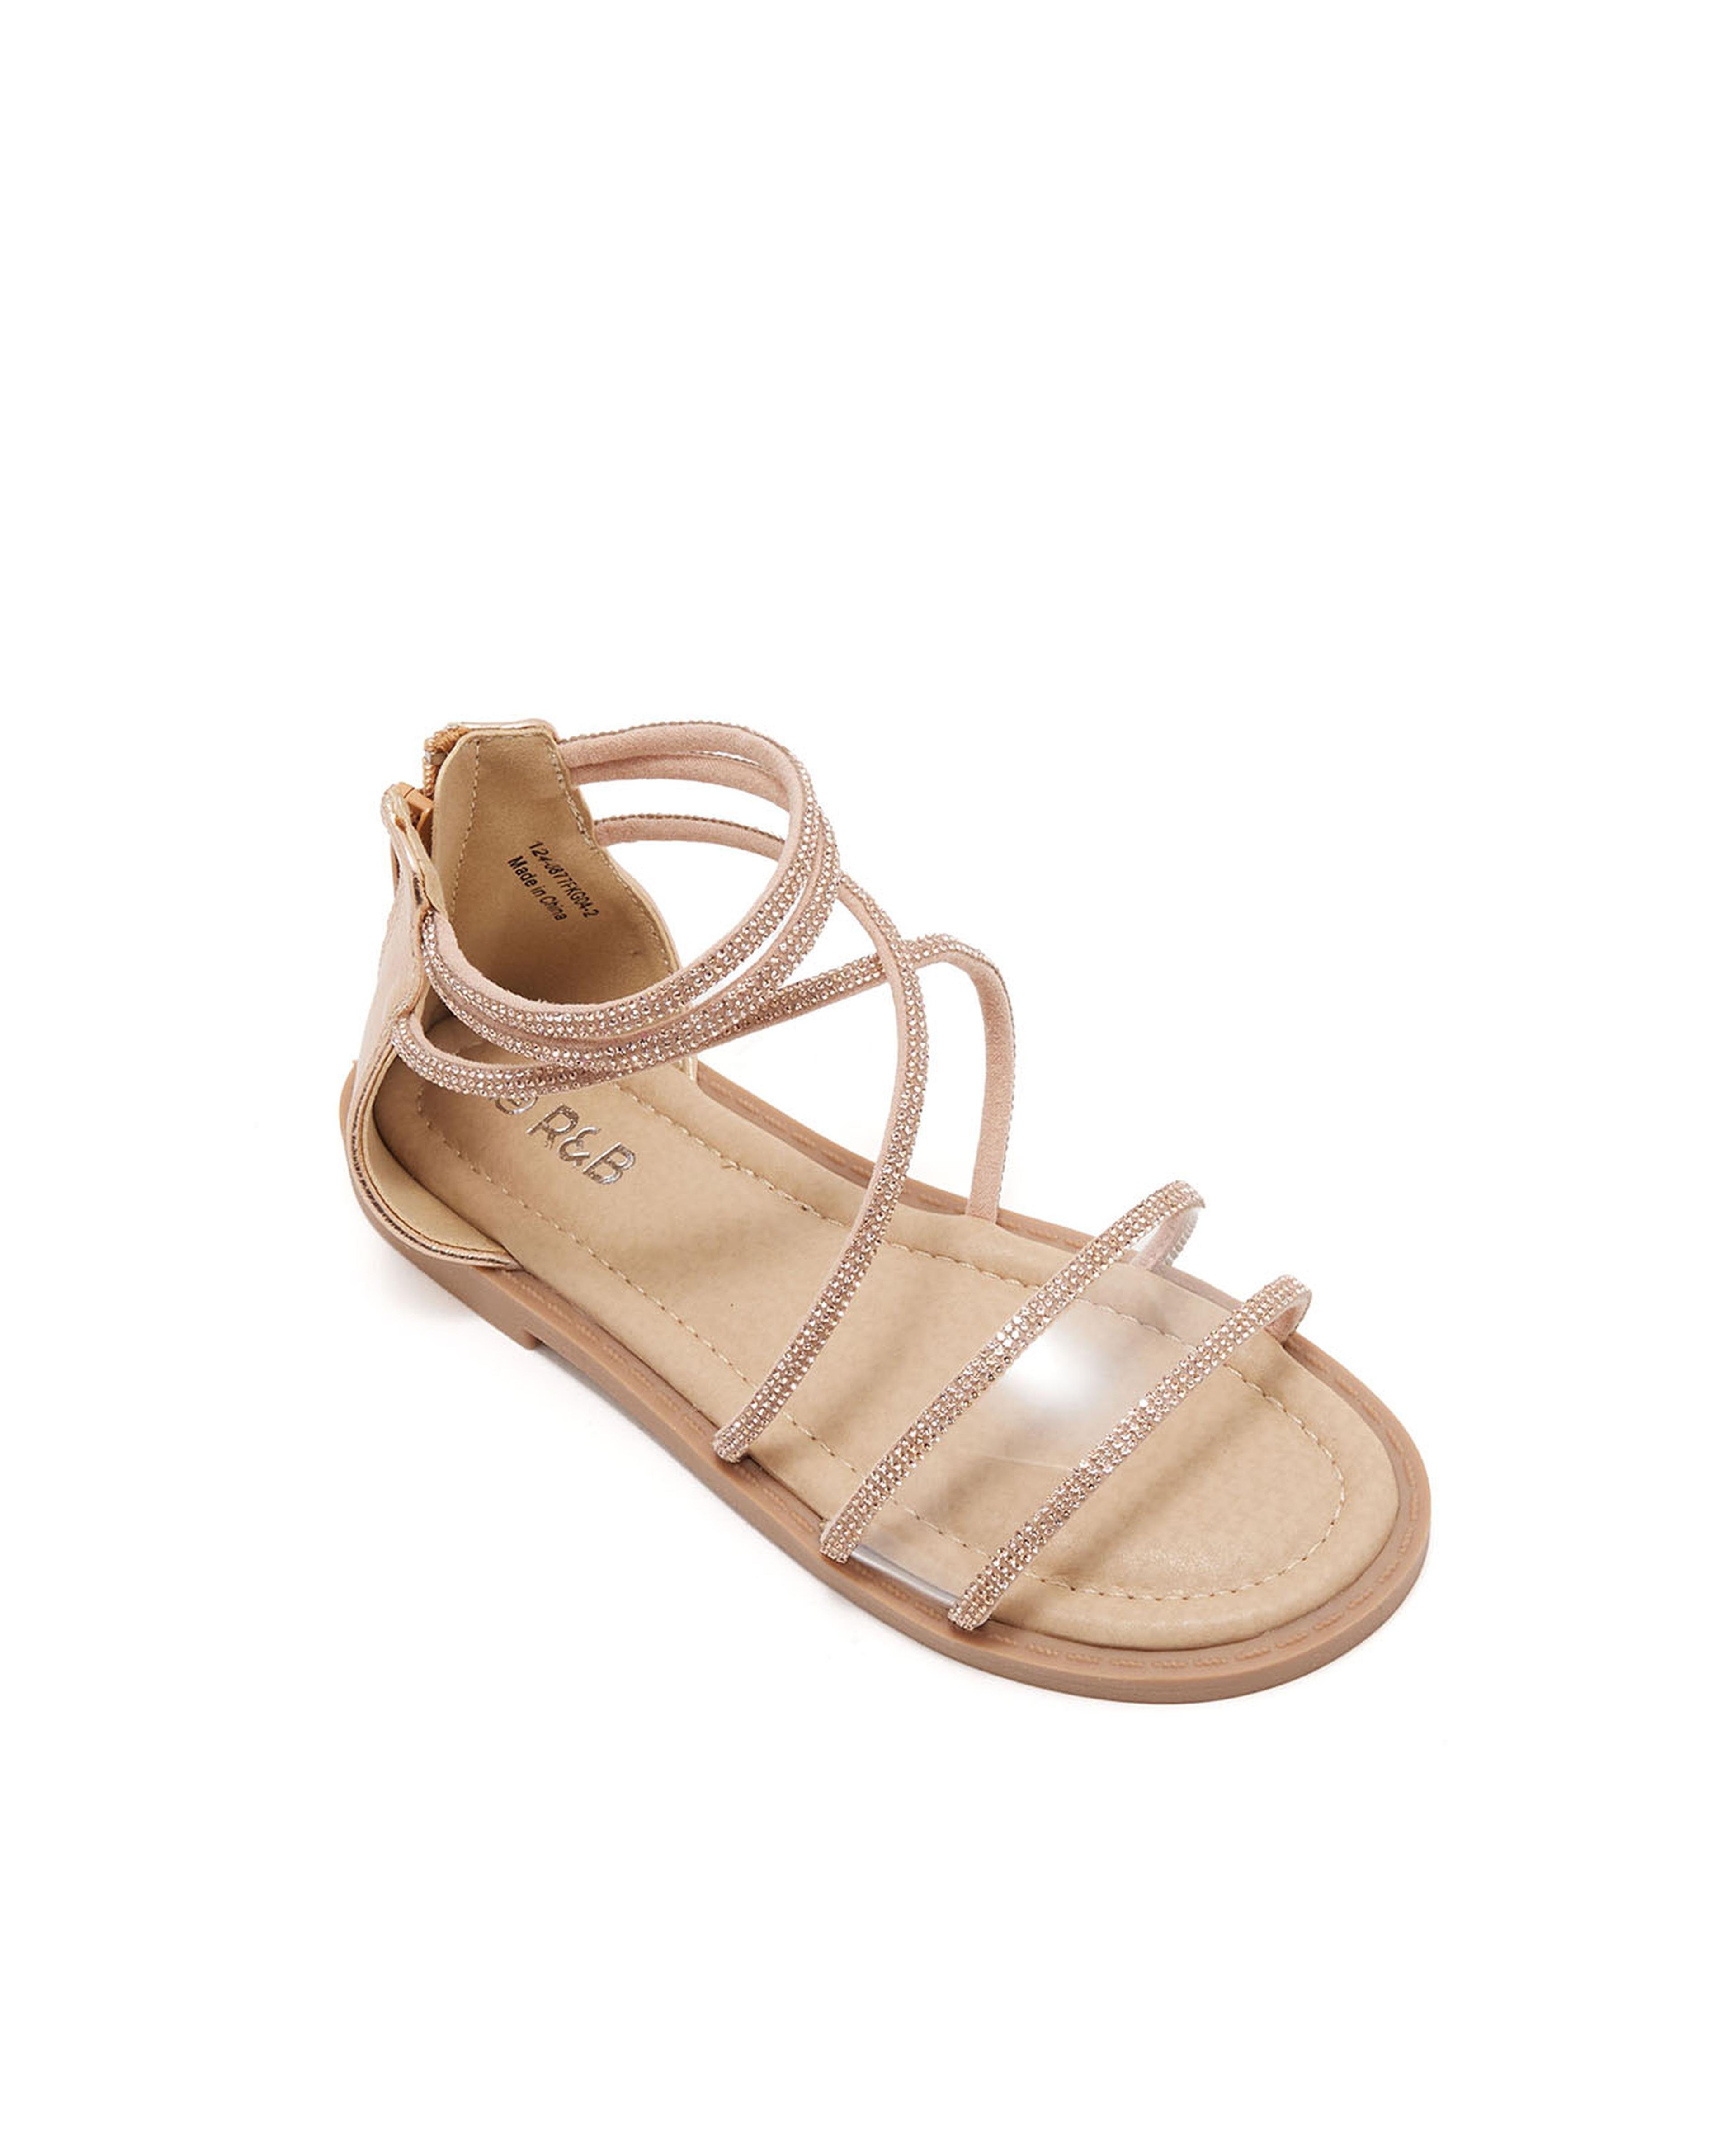 Embellished Gladiator Sandals